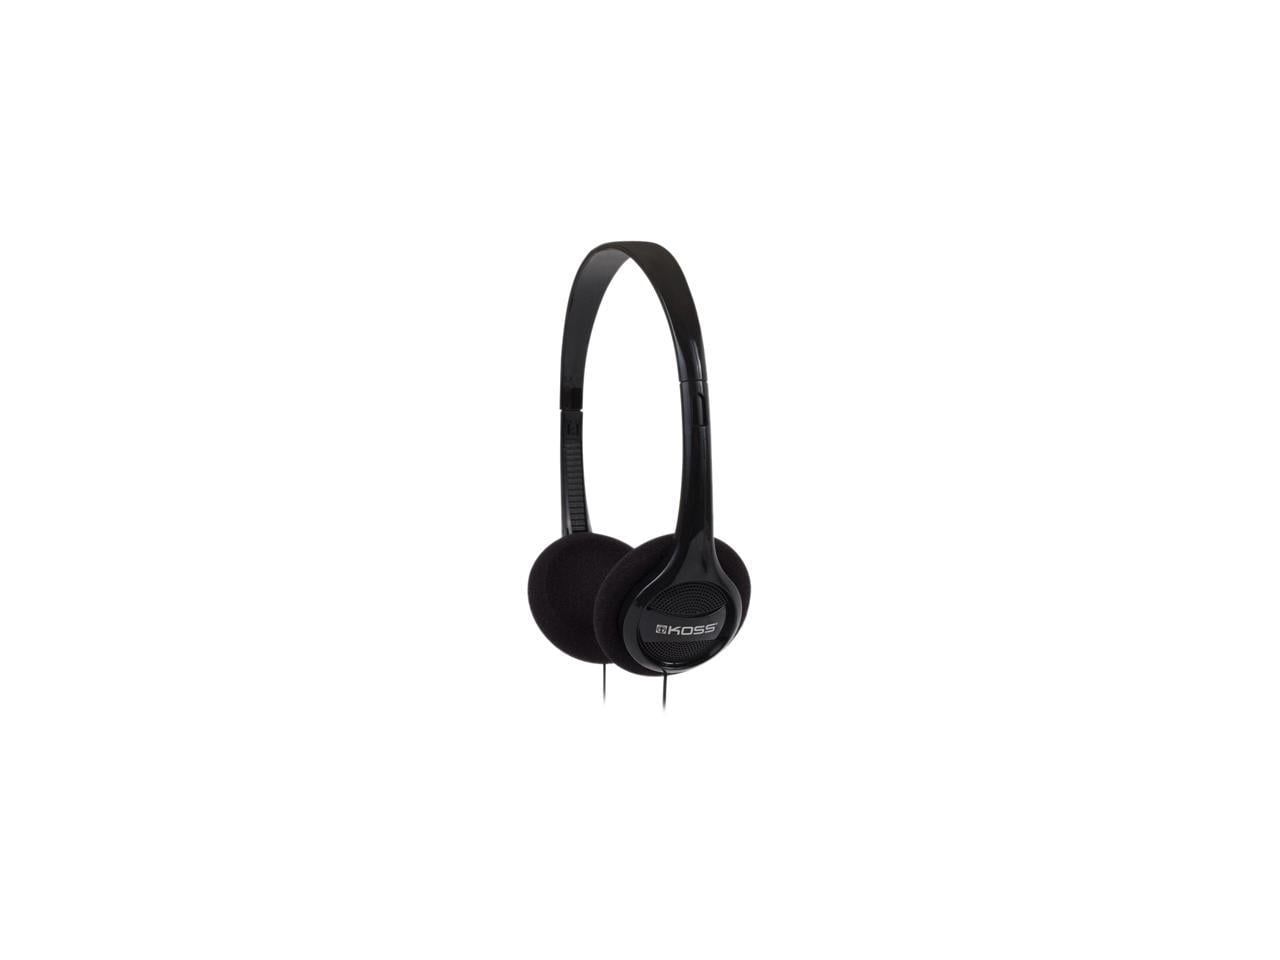 Koss® Kph7k On-ear Headphones